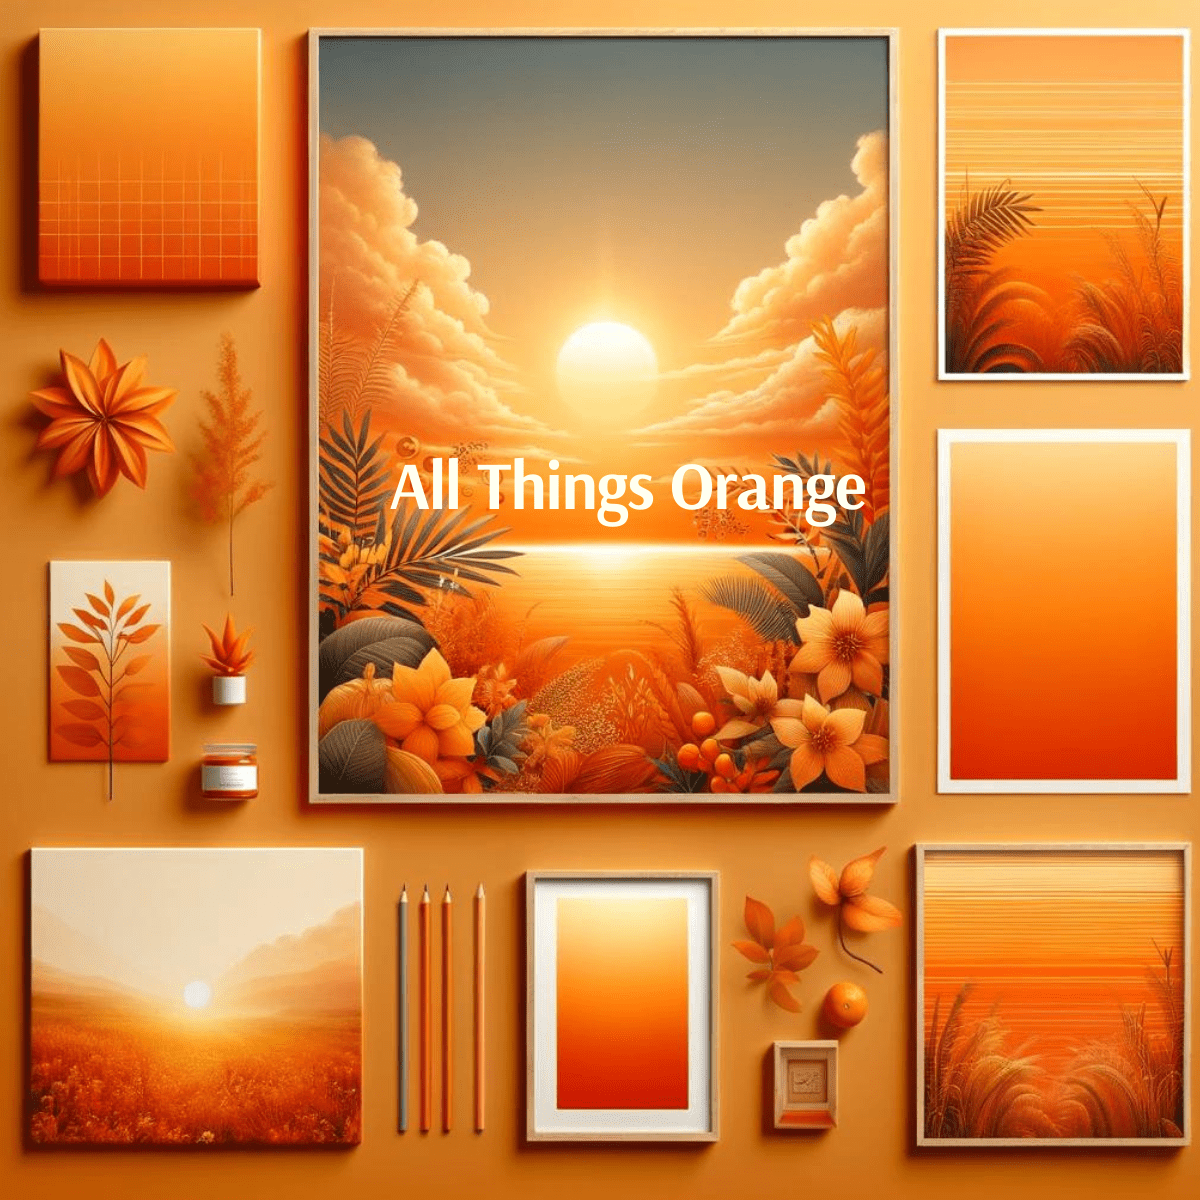 All Things Orange - motif